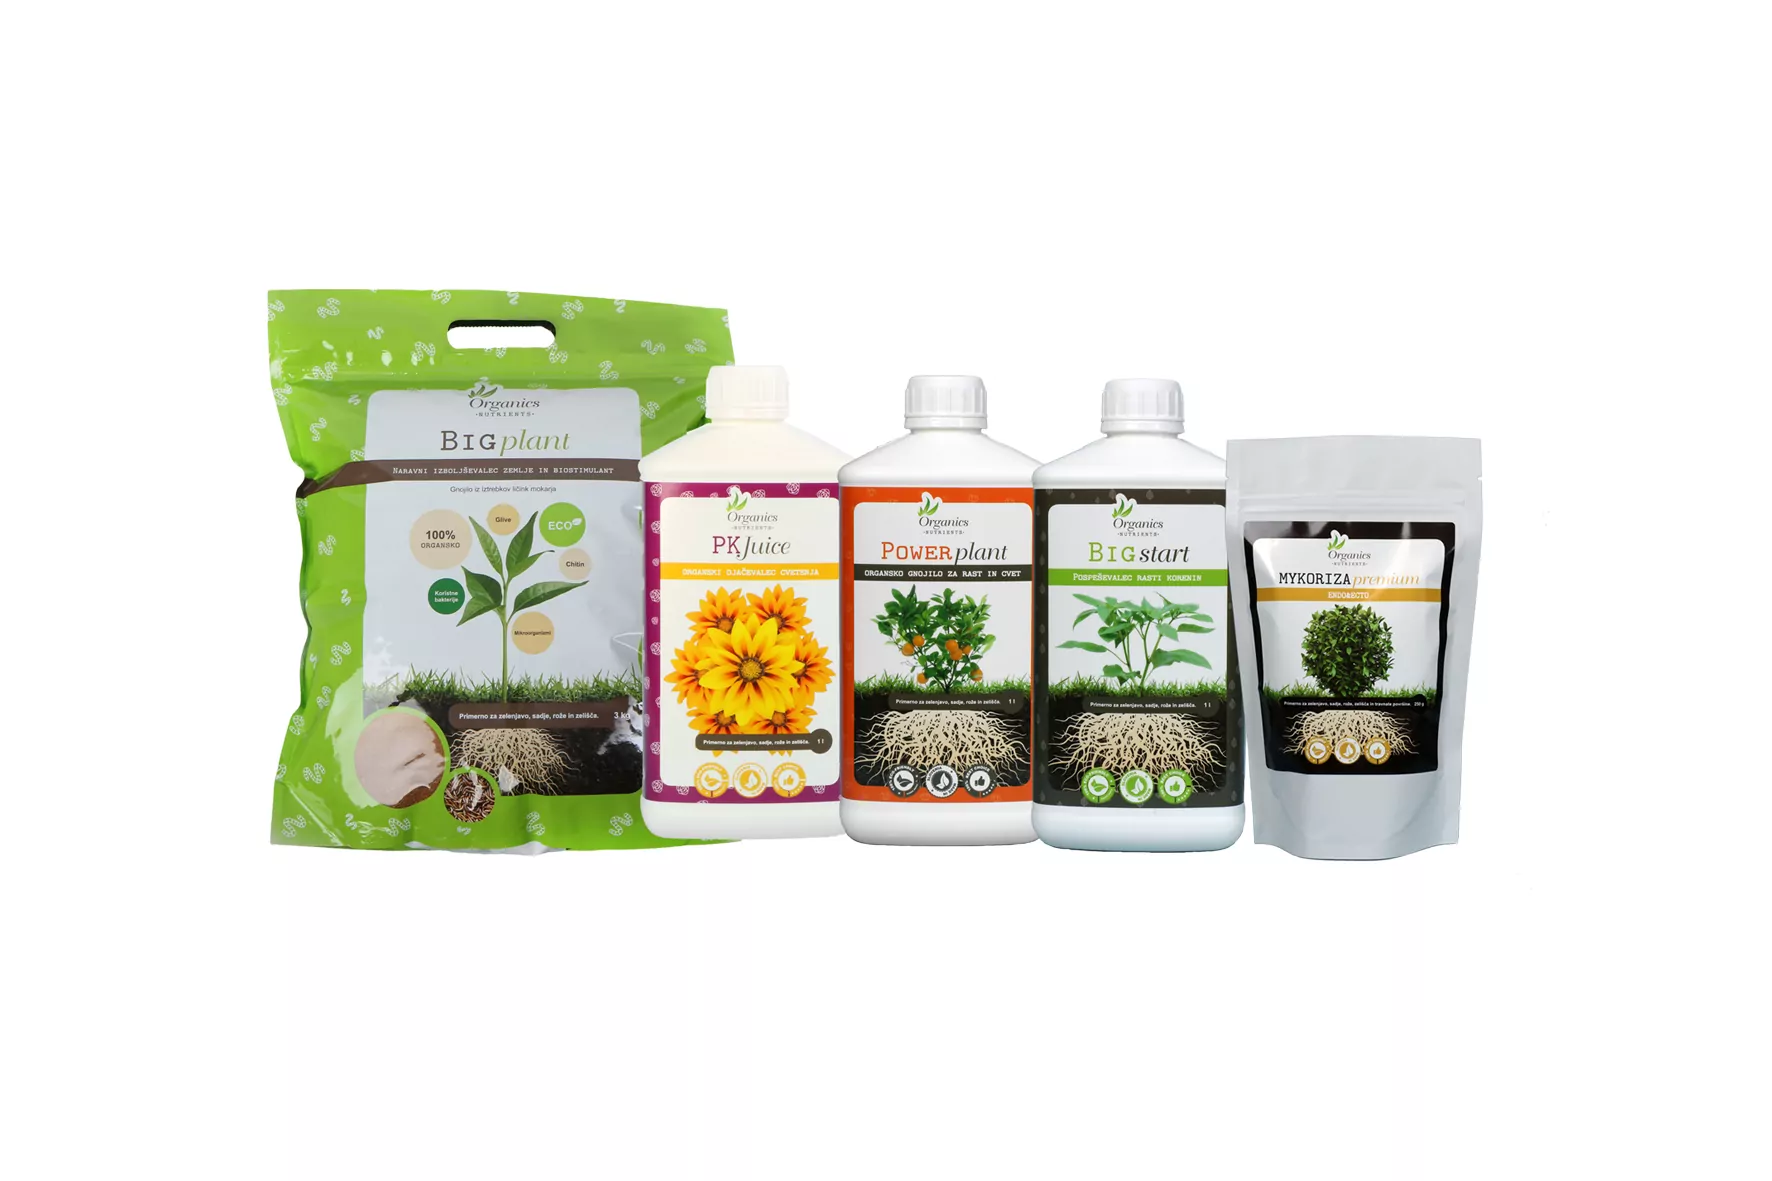 Набор Organics Nutrients Starter Kit от магазина GrowMix